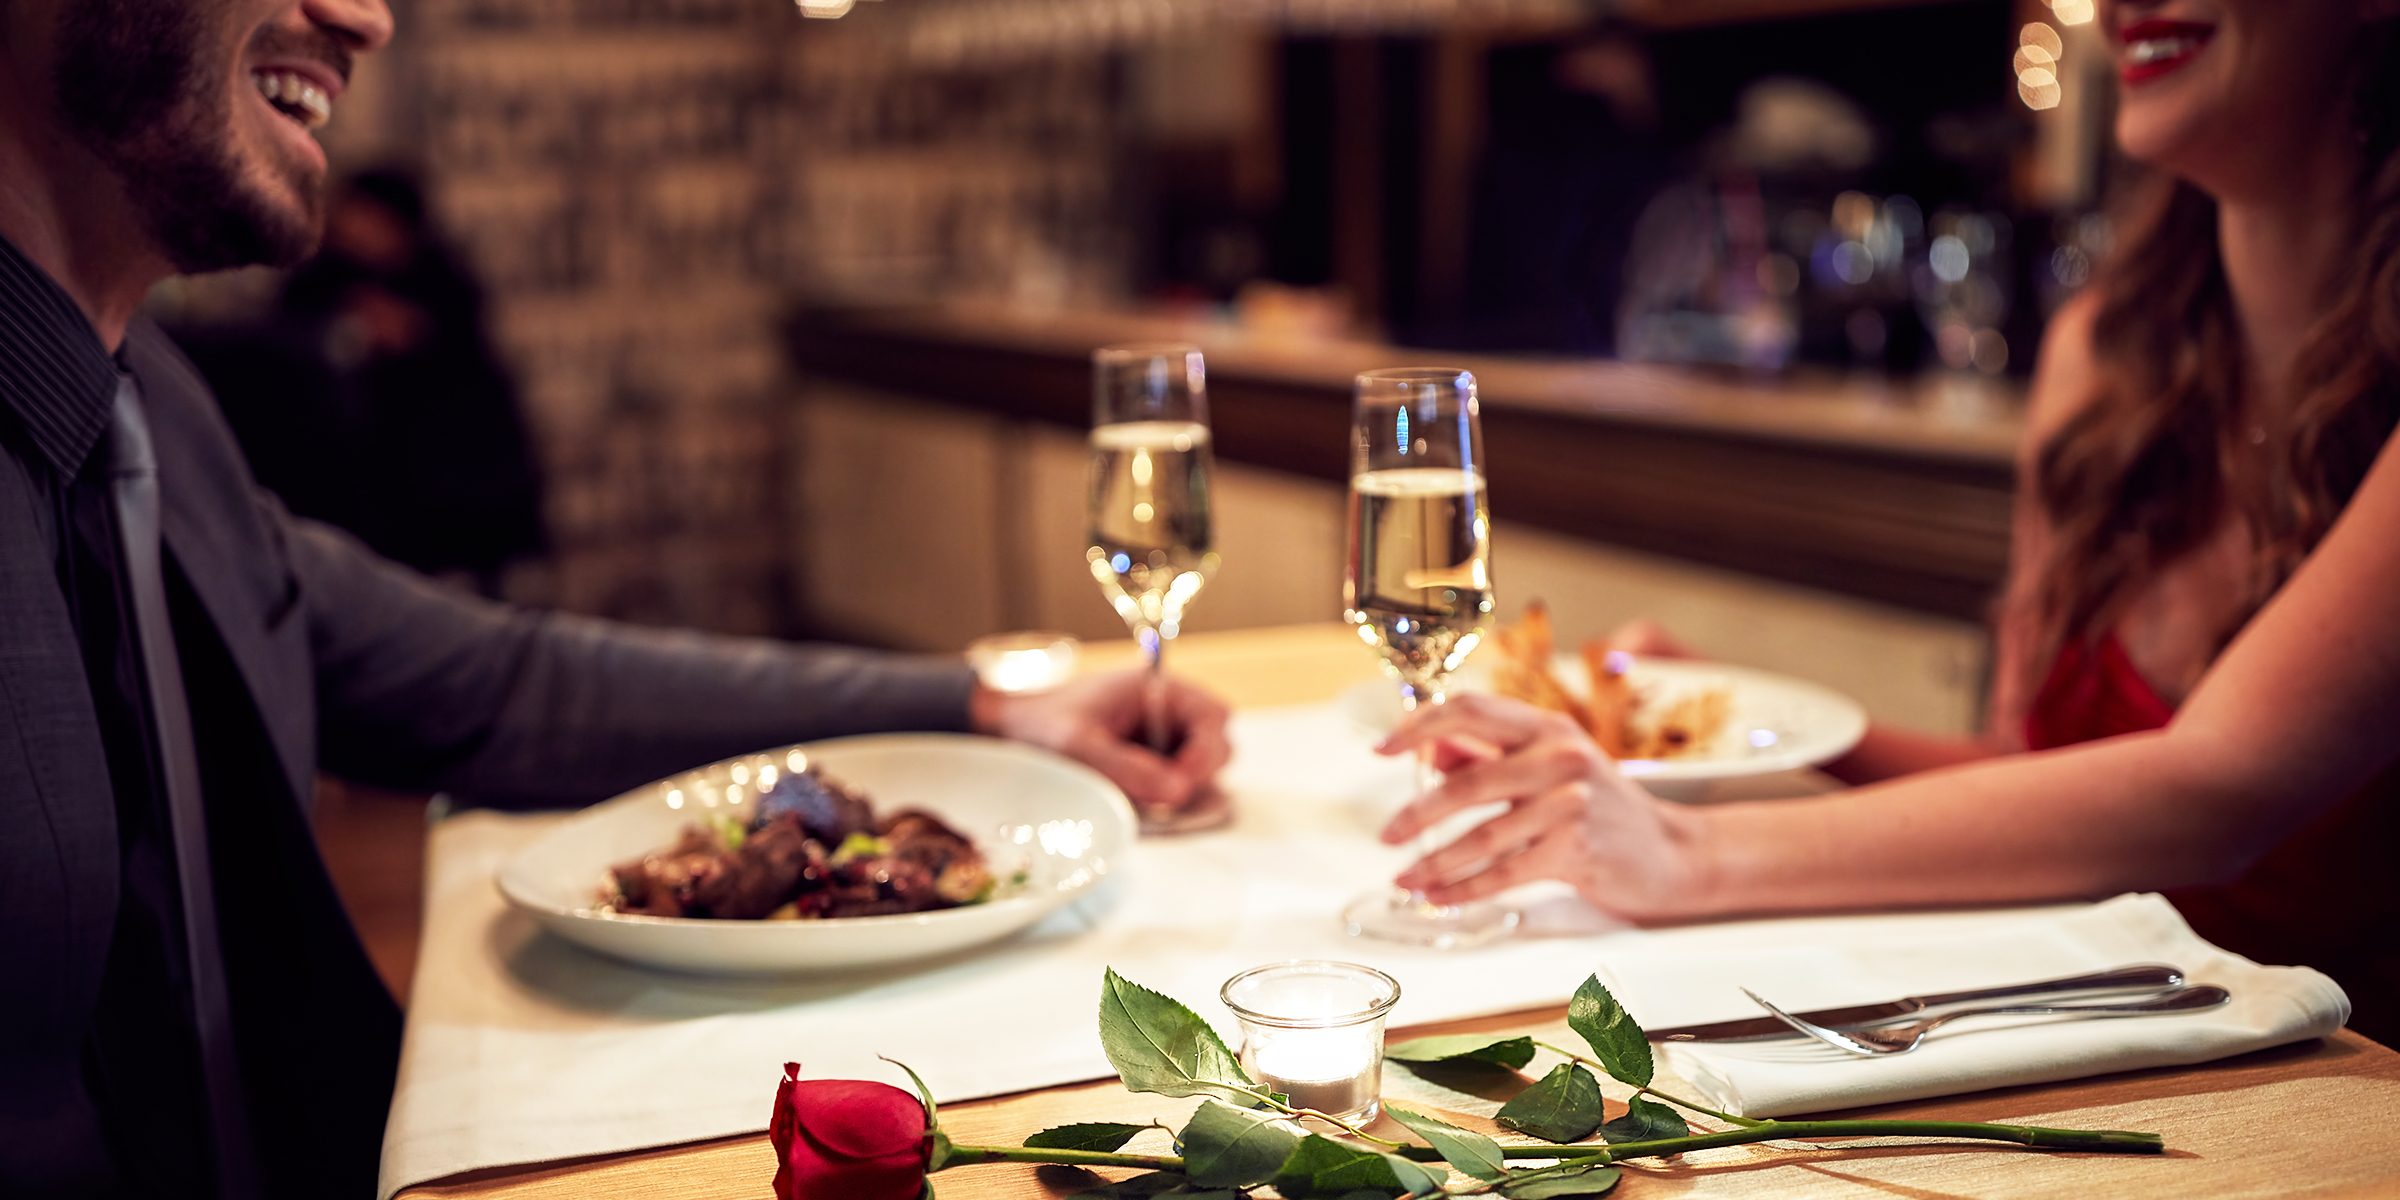 Pareja en una cena romántica | Foto: Shutterstock